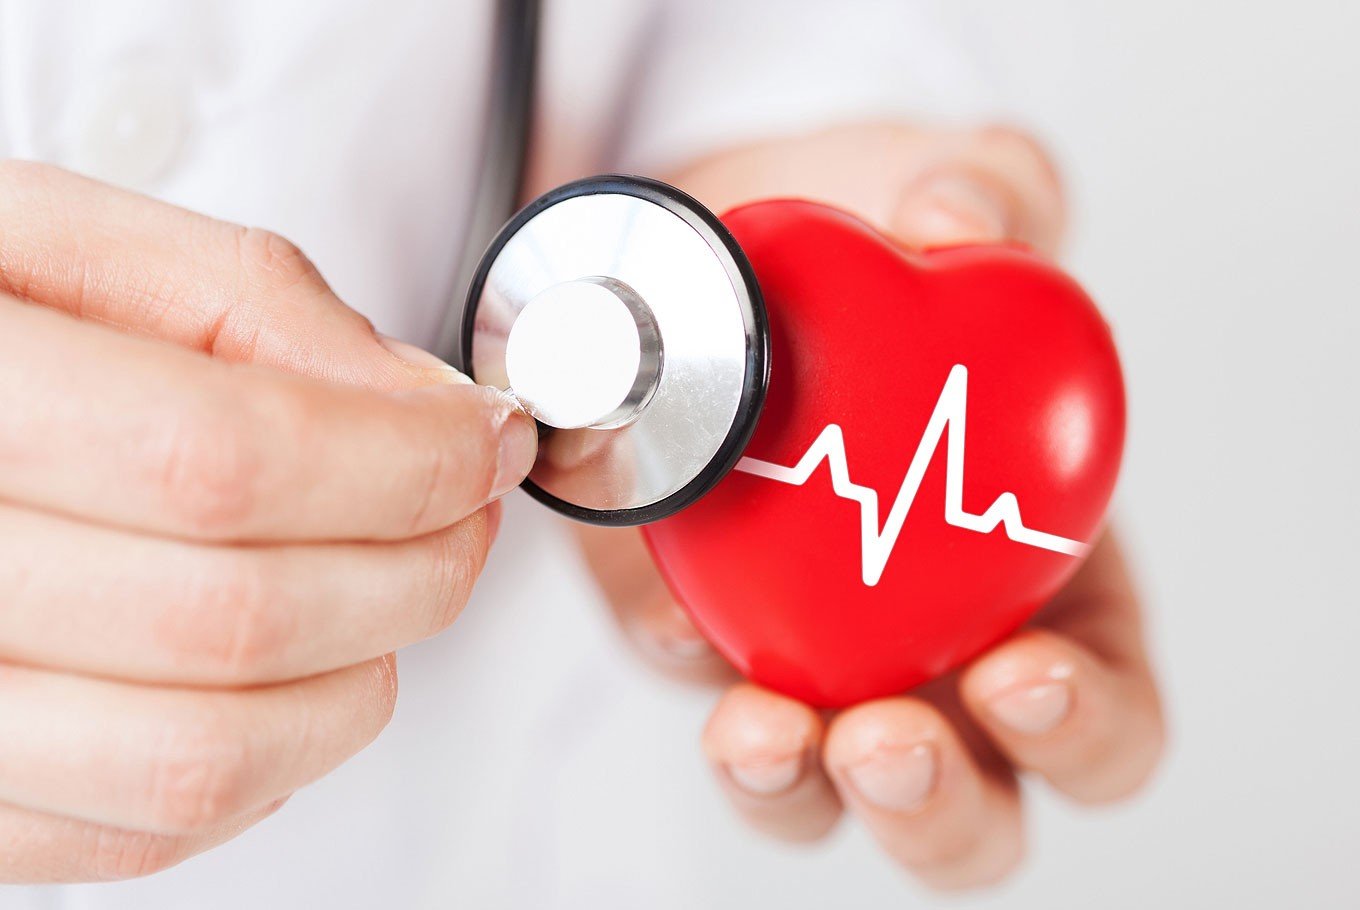 egészségügyi cikkek szívbetegségek magas vérnyomás szív hangok